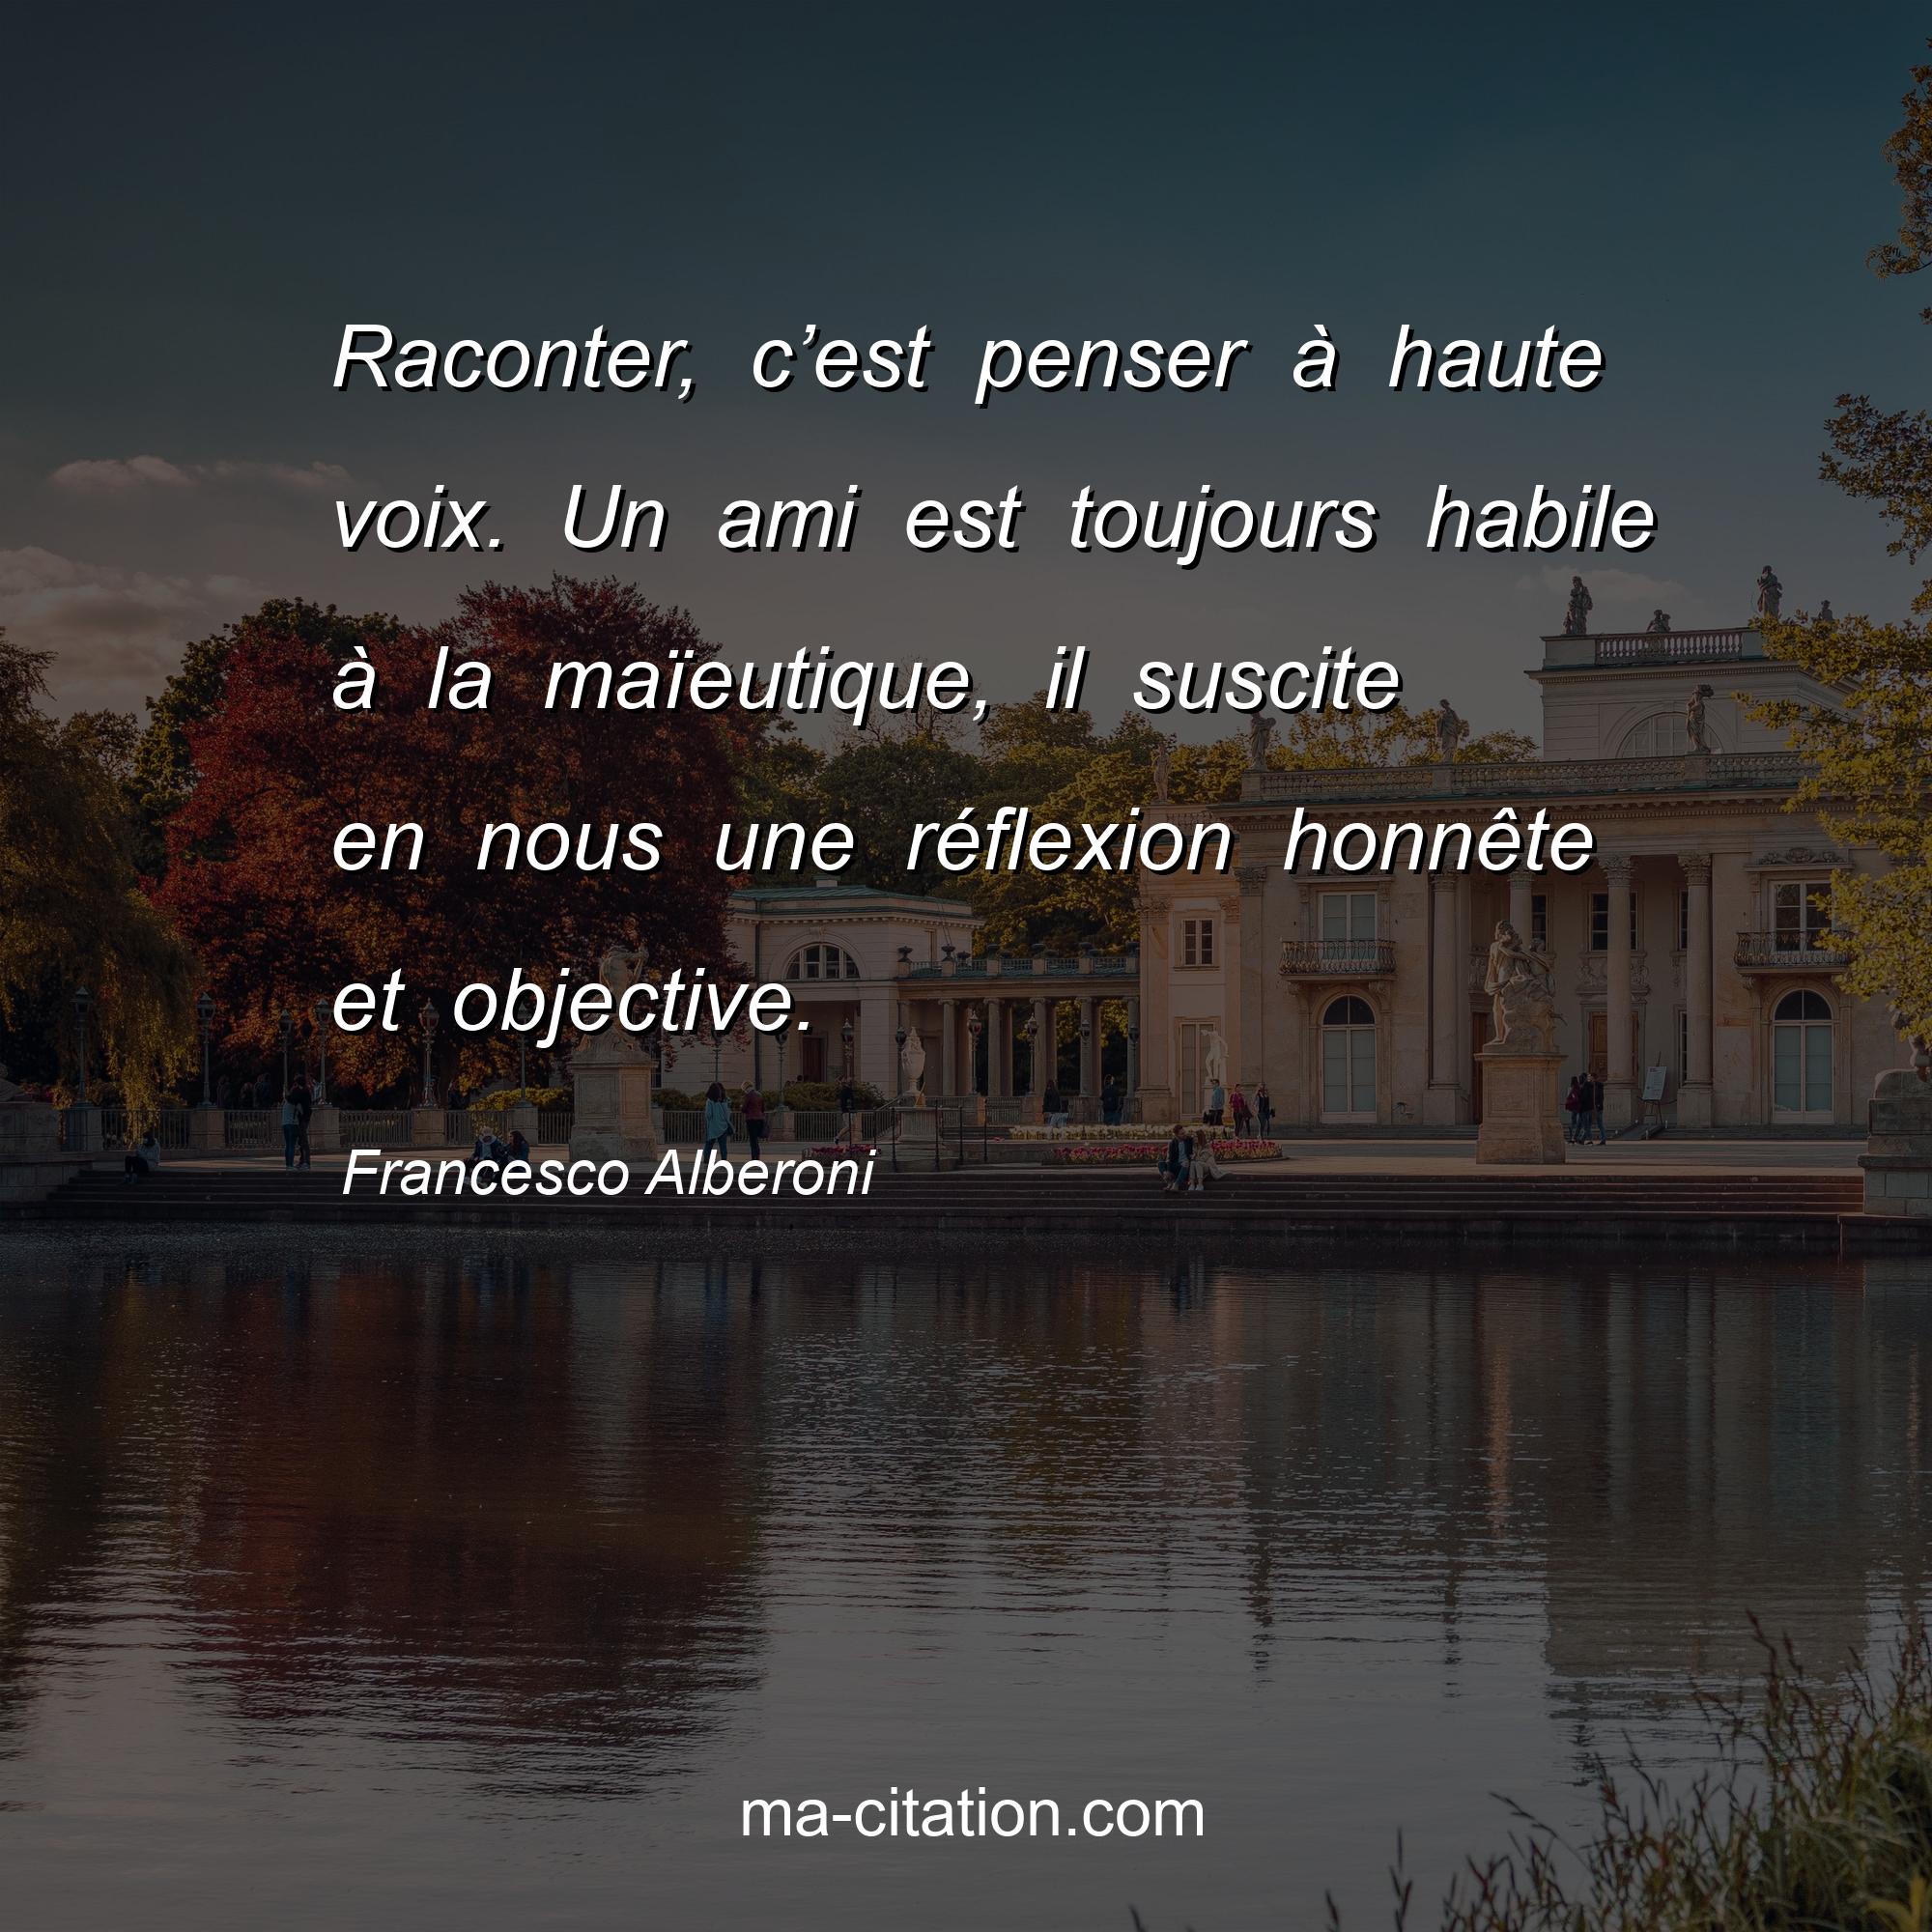 Francesco Alberoni : Raconter, c’est penser à haute voix. Un ami est toujours habile à la maïeutique, il suscite en nous une réflexion honnête et objective.